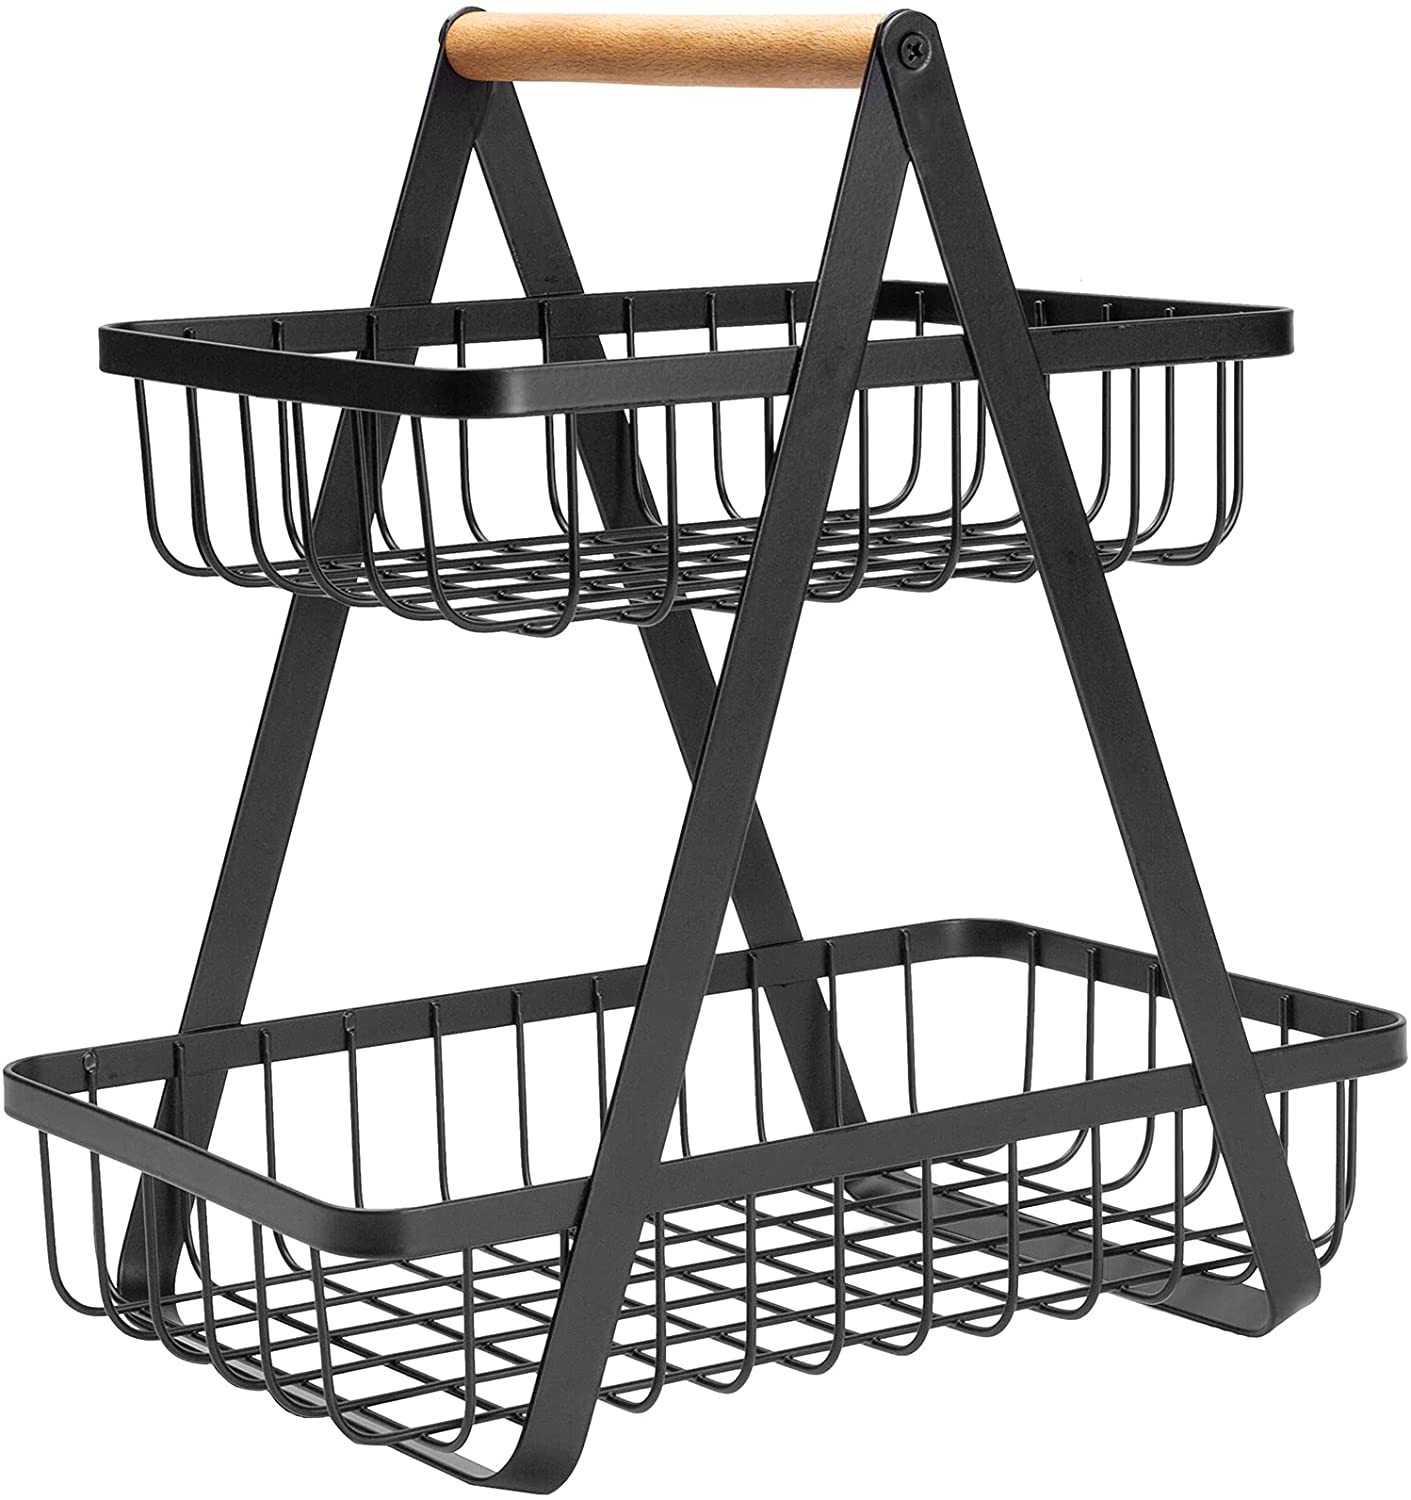 Set de 2 cestas organizadoras de metal y madera en blanco y negro con asa de